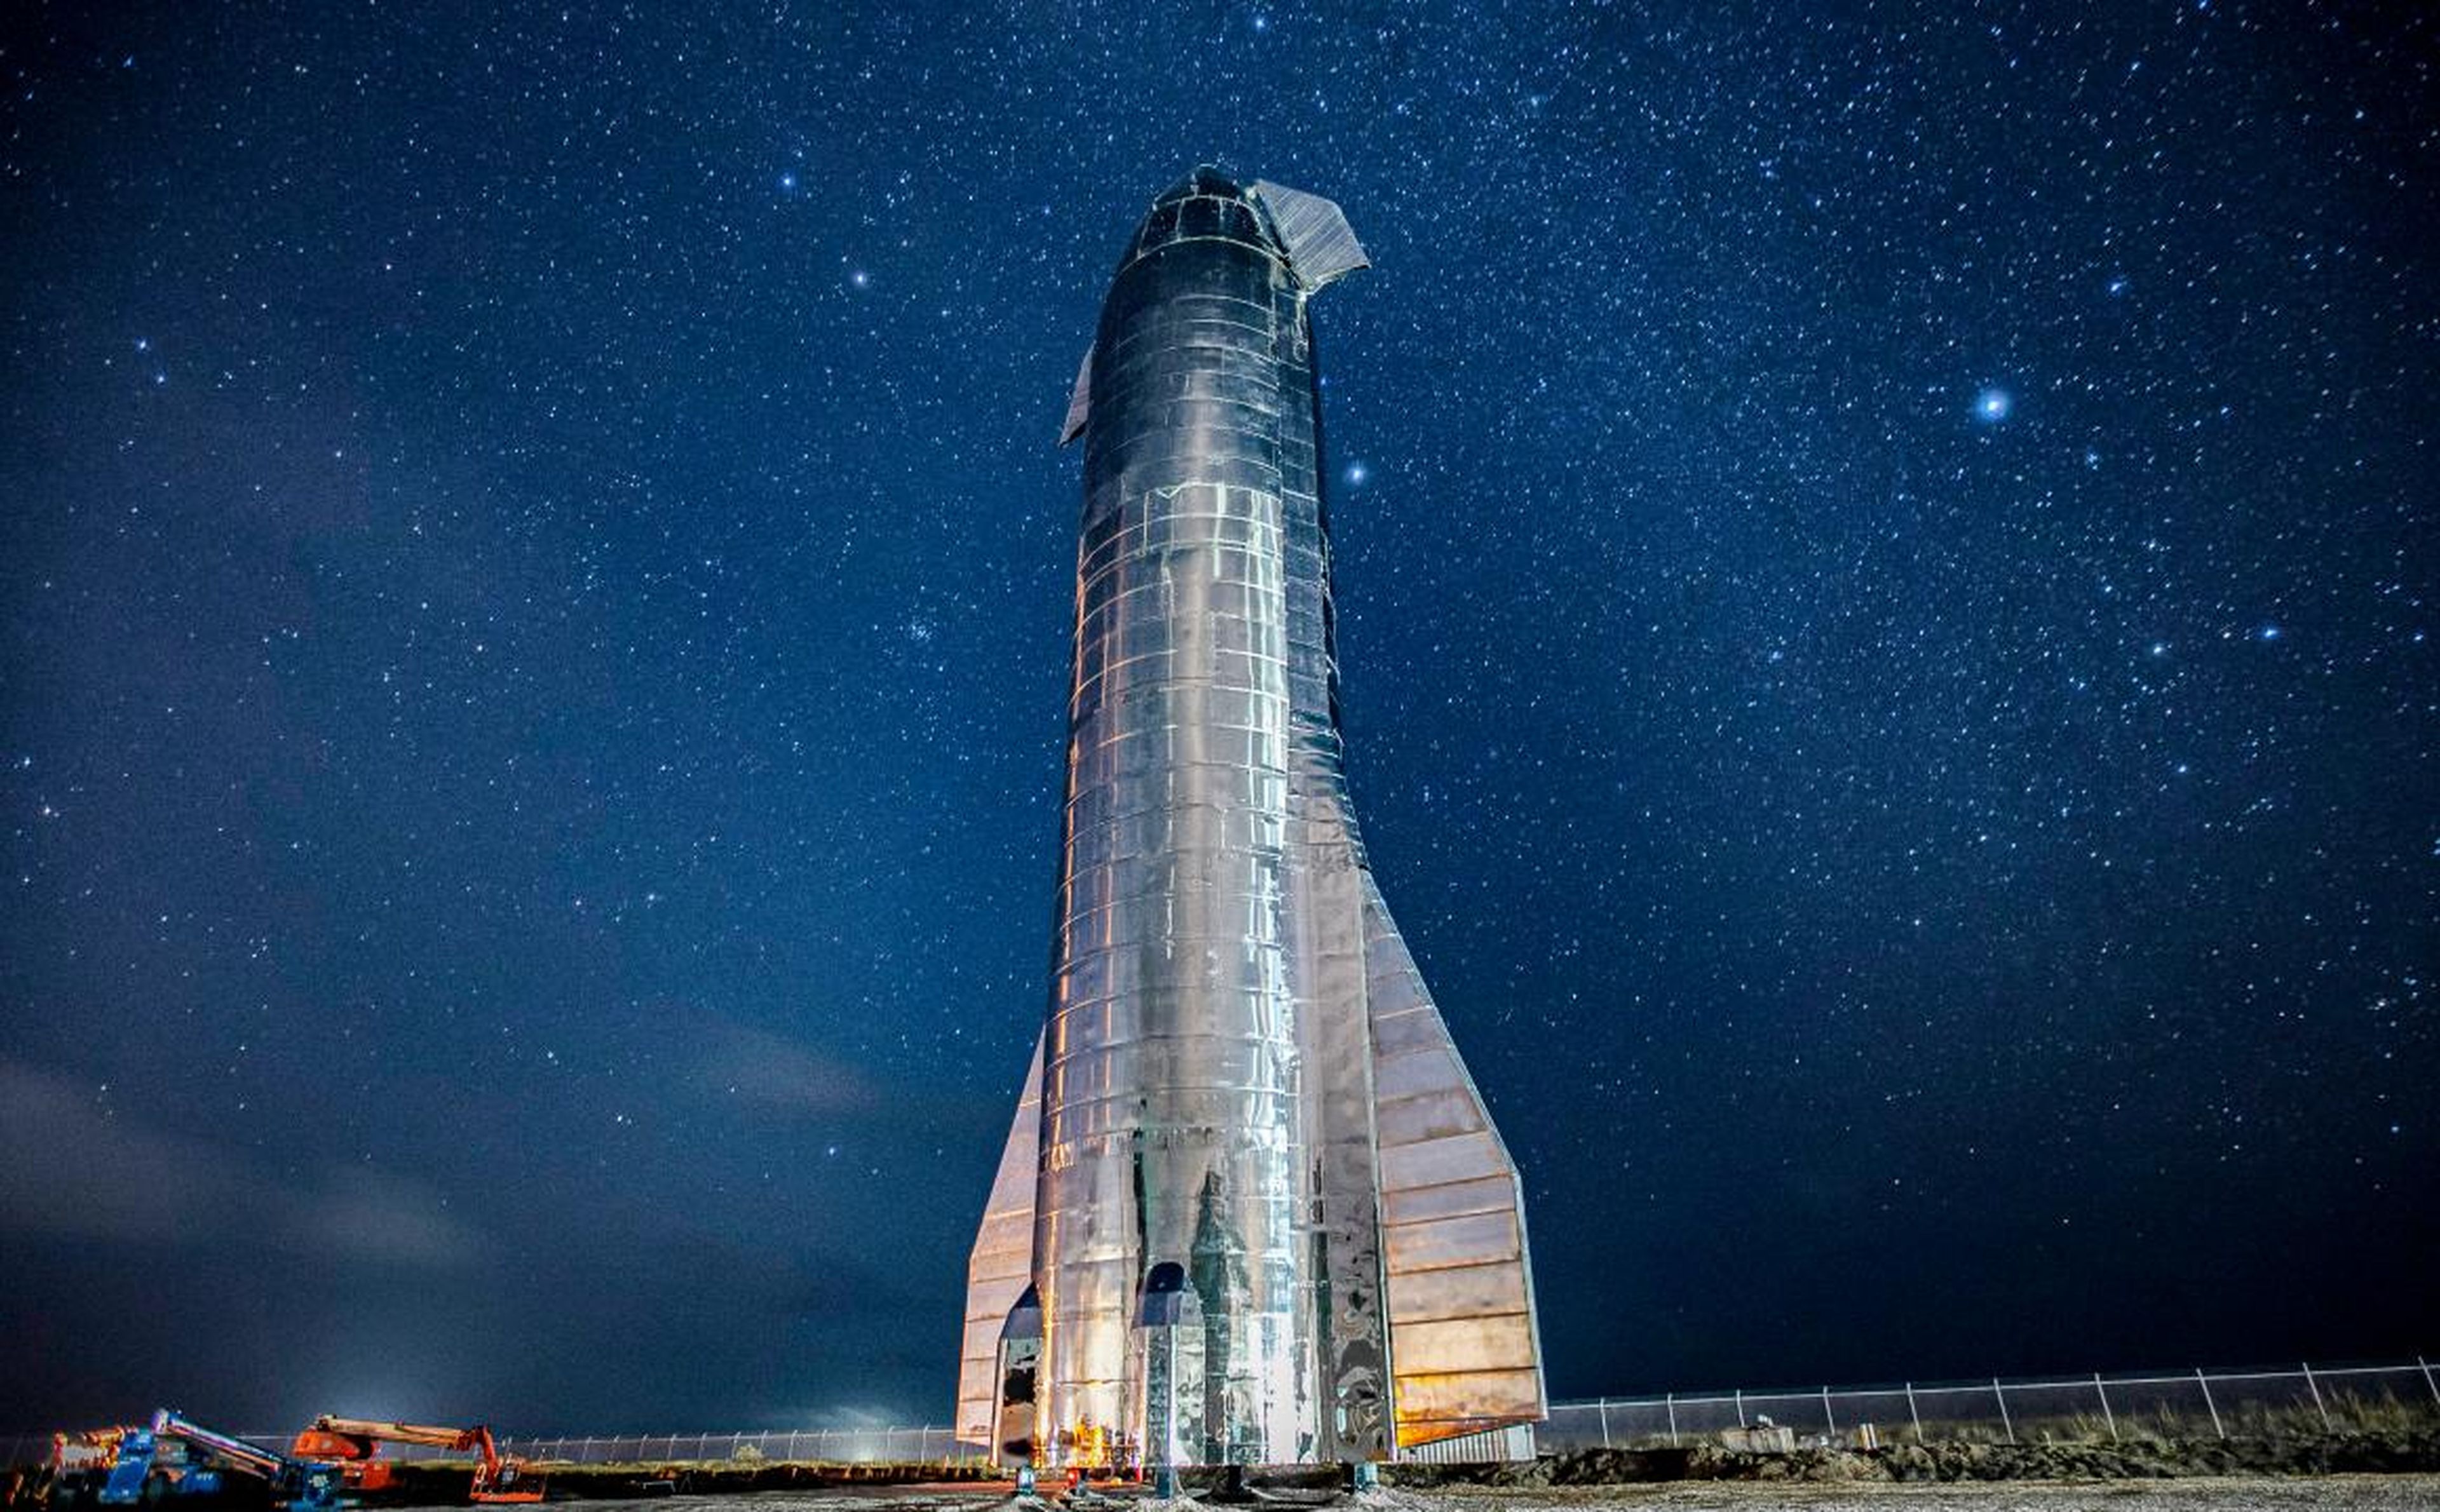 El prototipo de cohete Mark 1 de la nave estelar de 300 metros de altura de SpaceX se encuentra en Boca Chica, Texas, en medio de un fondo de estrellas en septiembre de 2019.